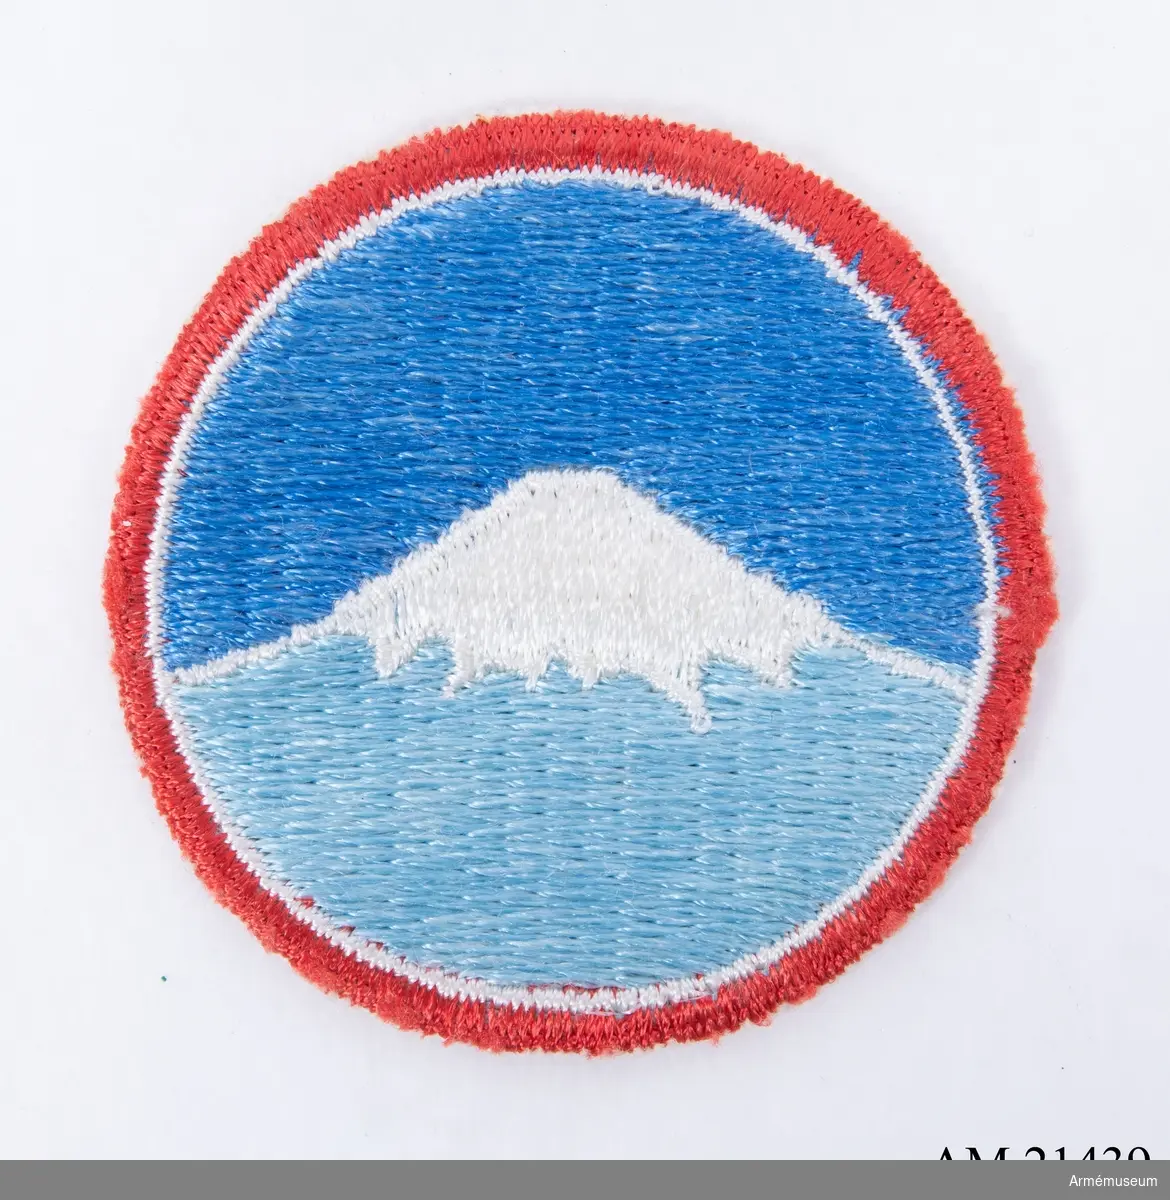 Grupp C I.
Emblem: japanernas heliga berg Mount Fuji.
Textbandet över Mount Fuji.